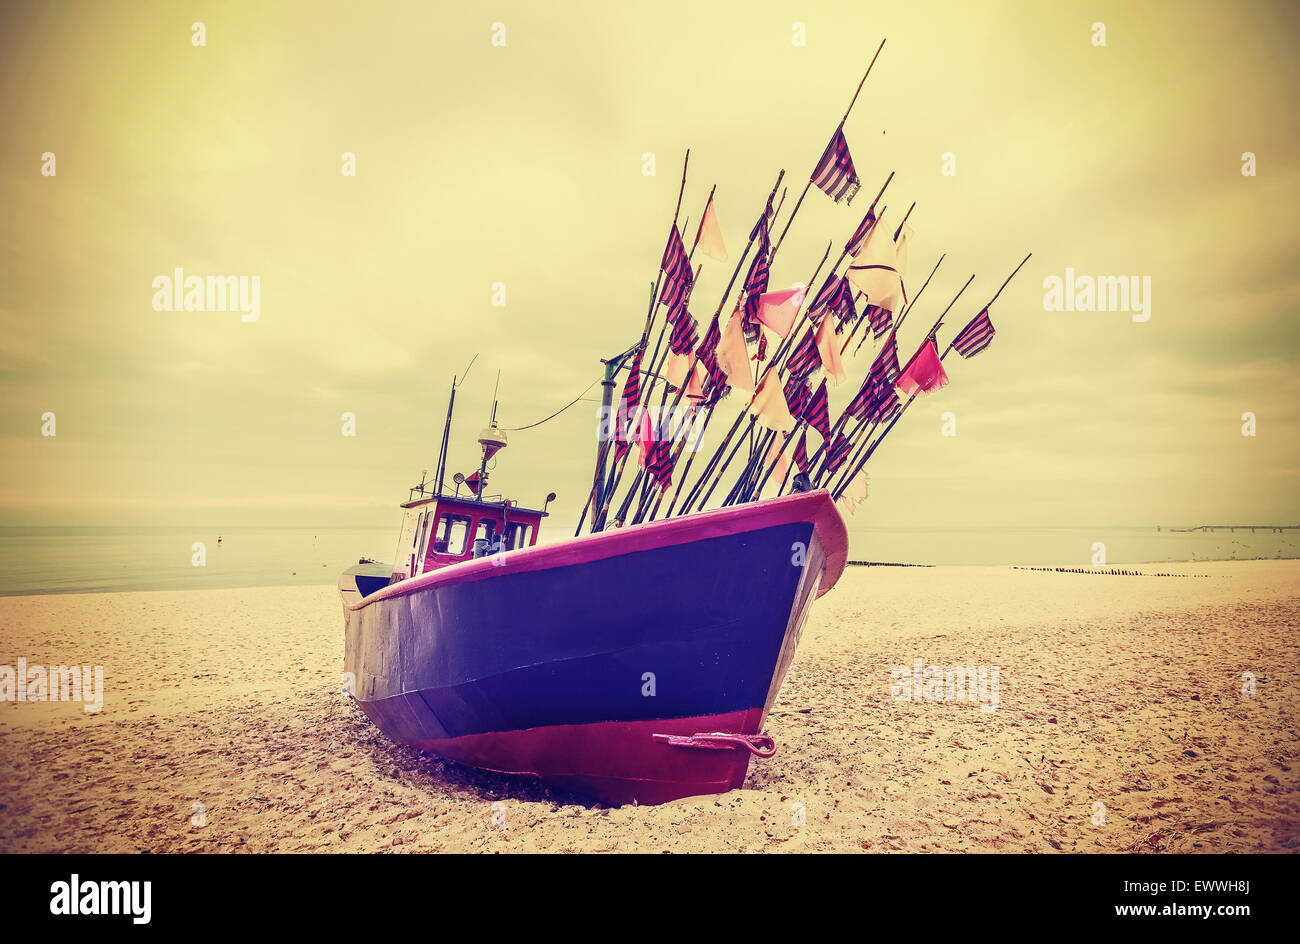 Retro estilo instagram foto de barco de pesca en una playa. Foto de stock